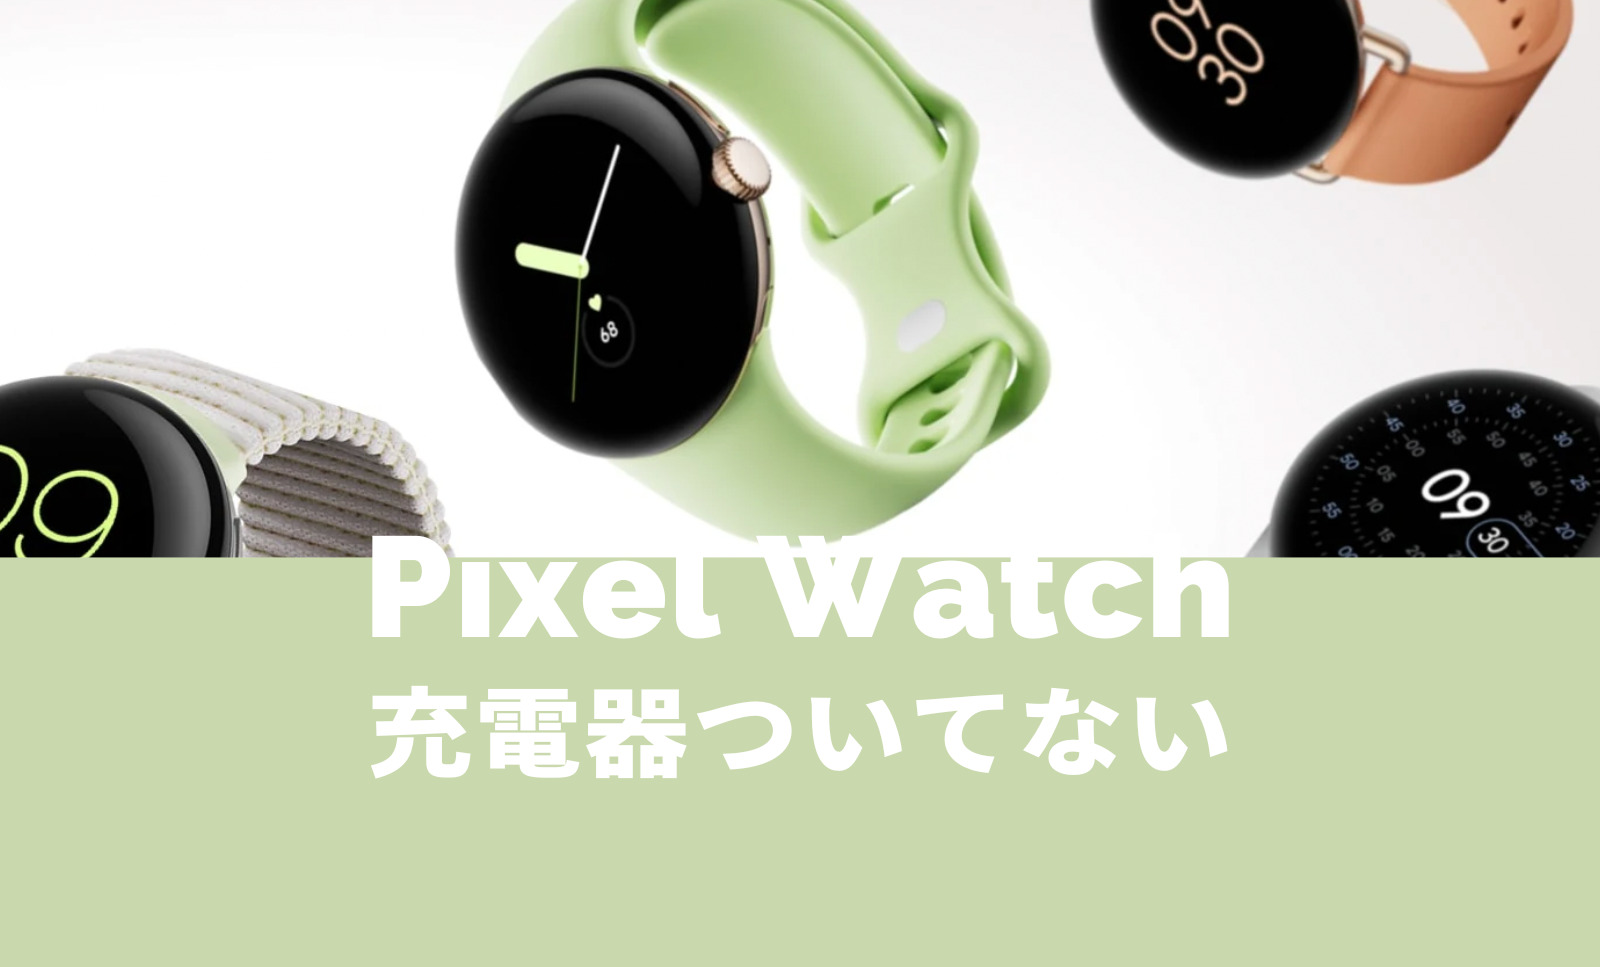 Pixel Watch(ピクセルウォッチ)は充電器ついてない&別売りになる？のサムネイル画像